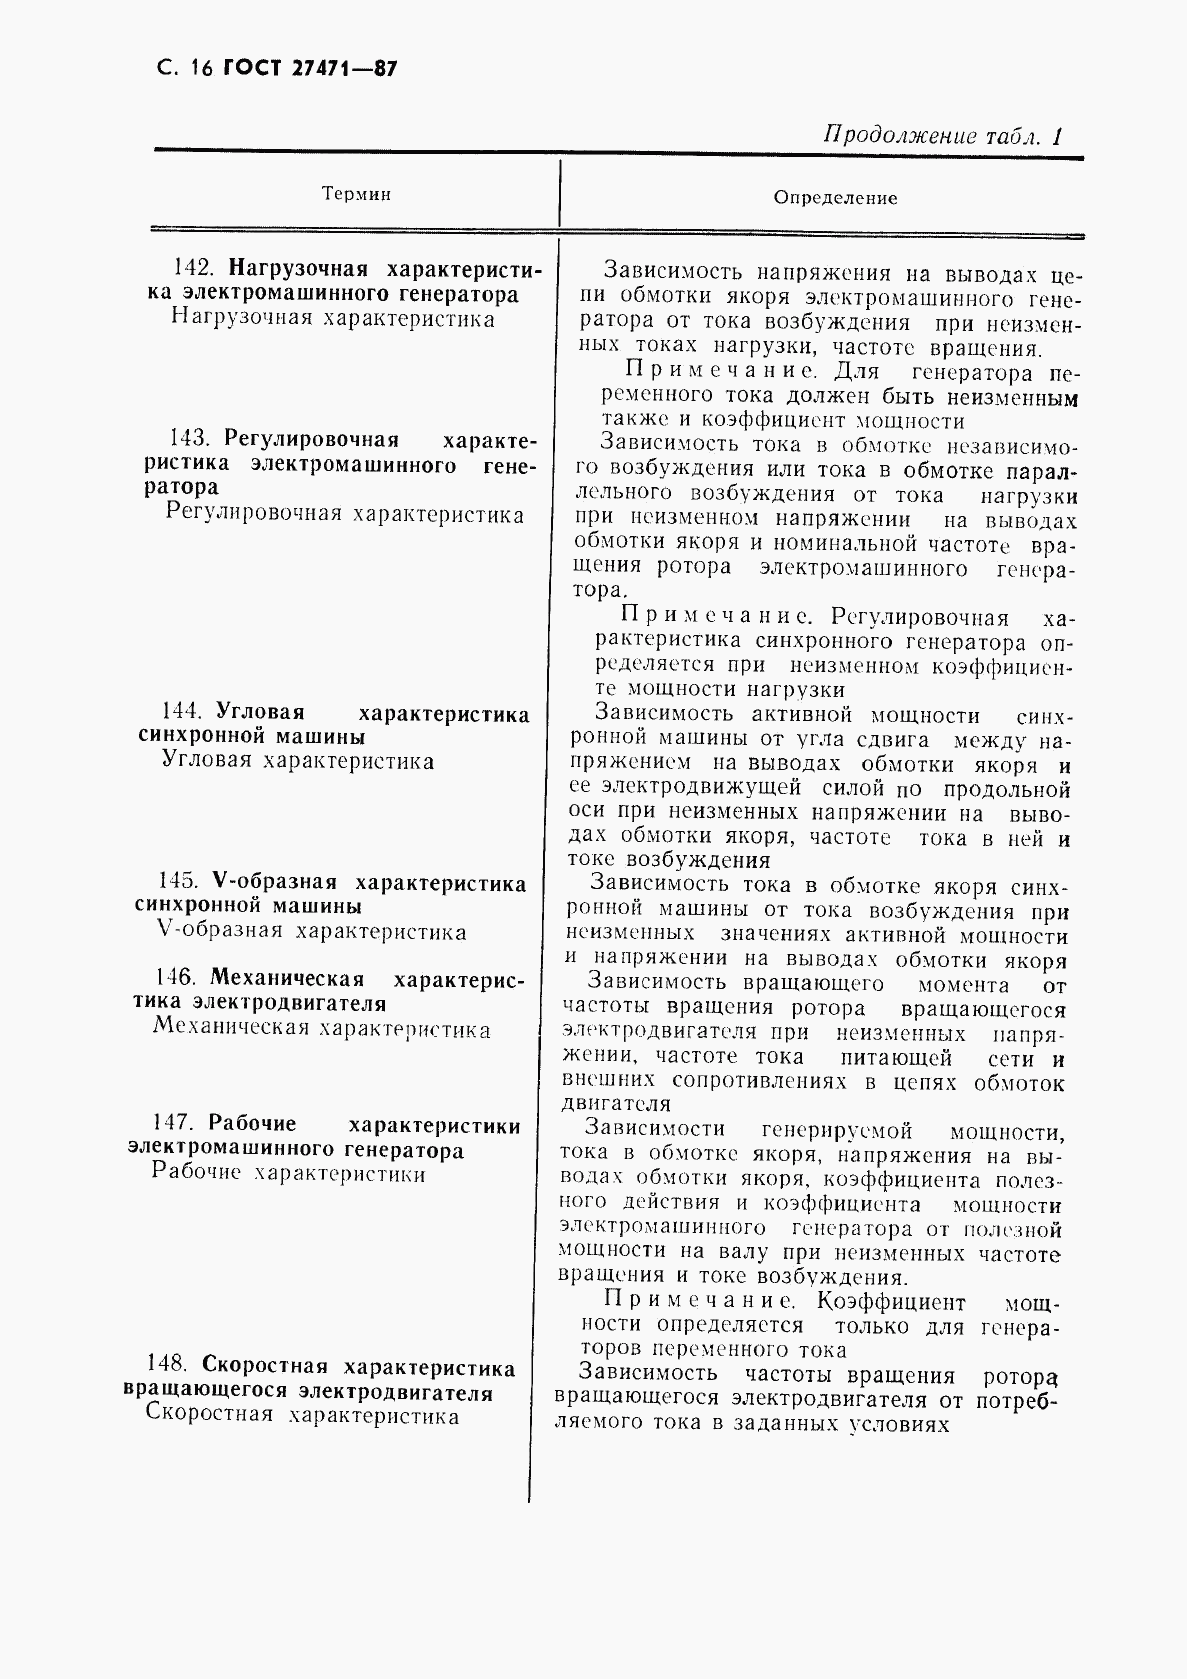 ГОСТ 27471-87, страница 17